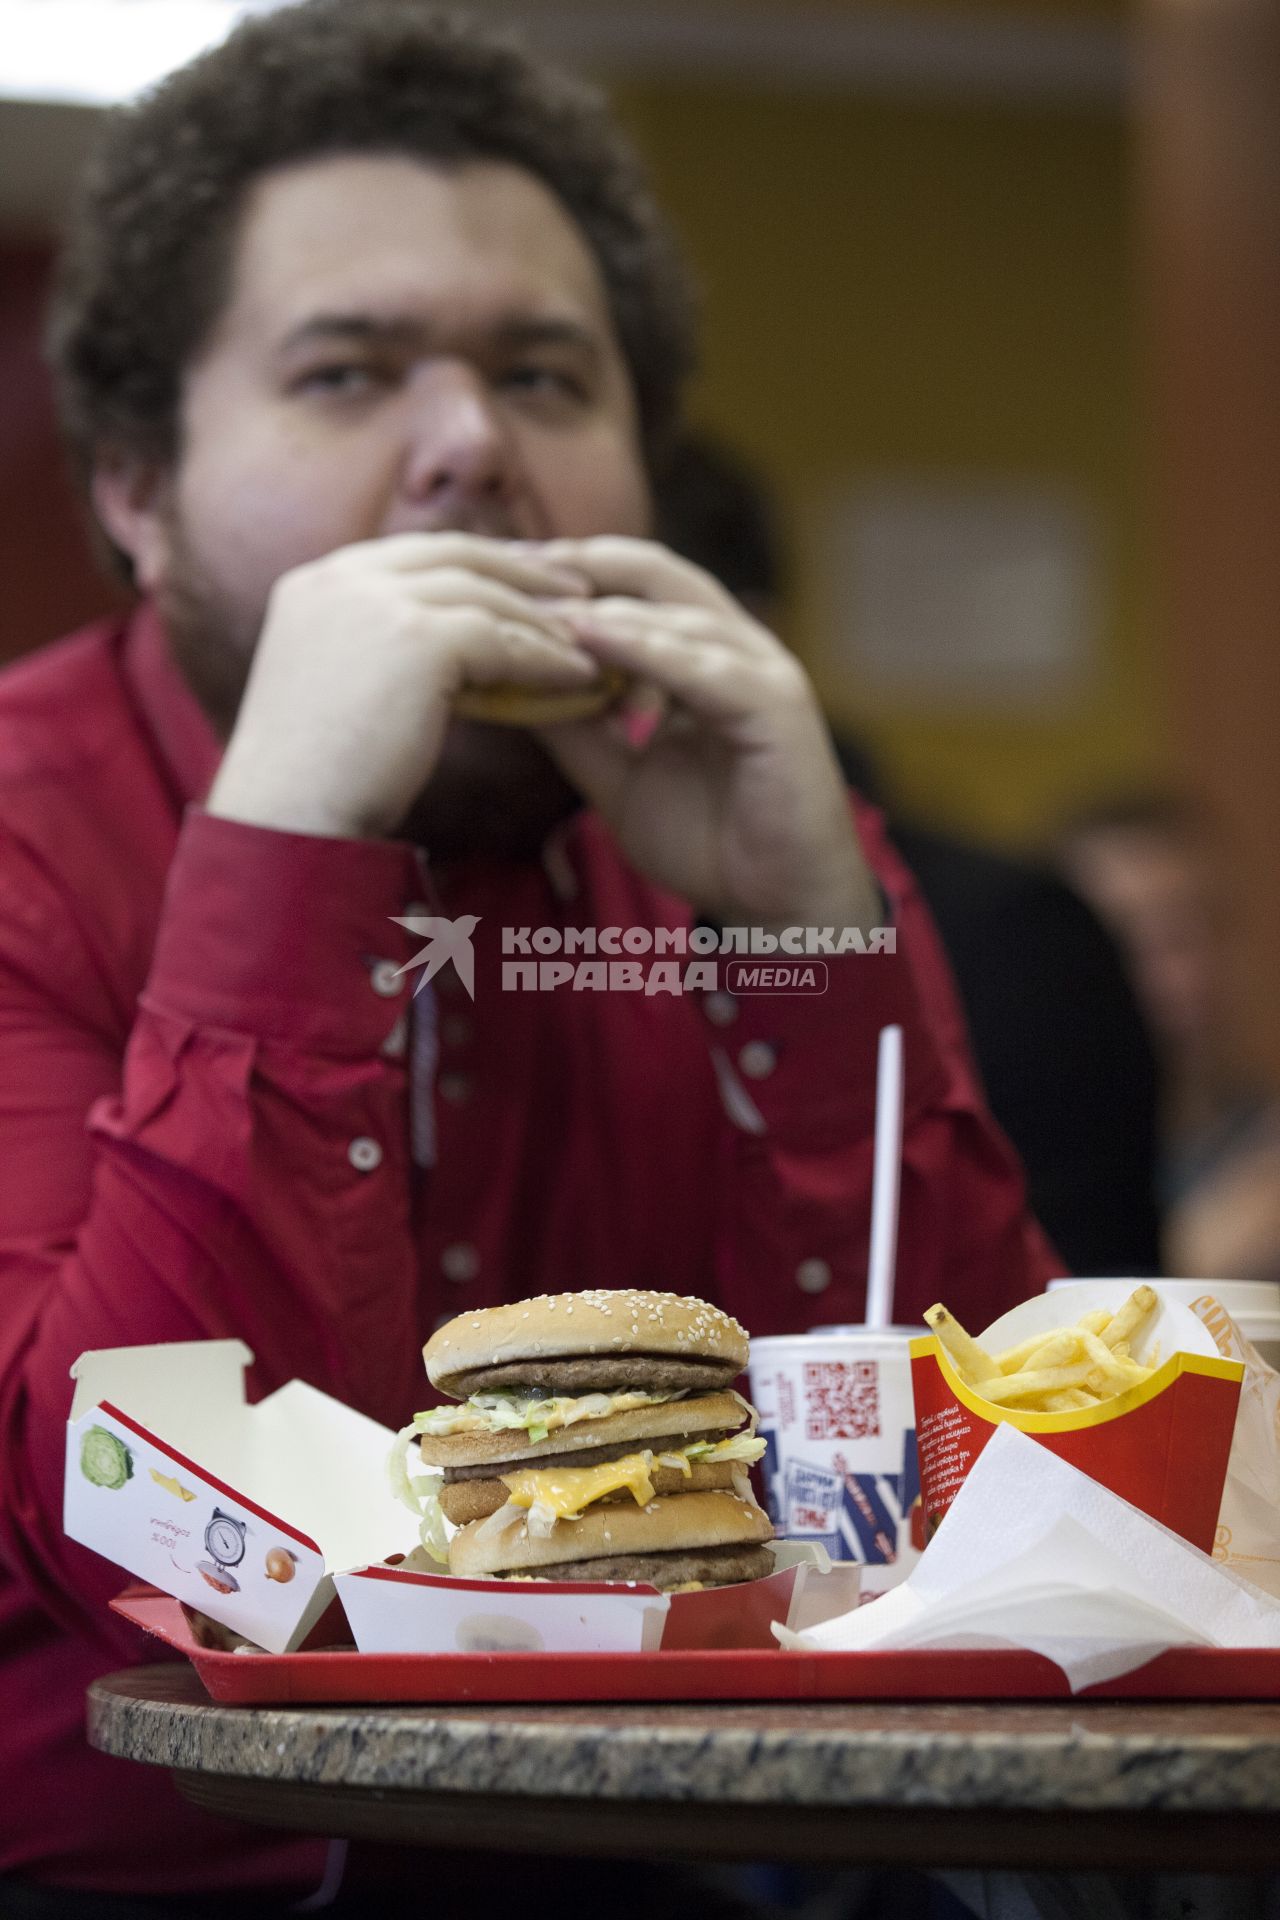 Человек ест гамбургер.